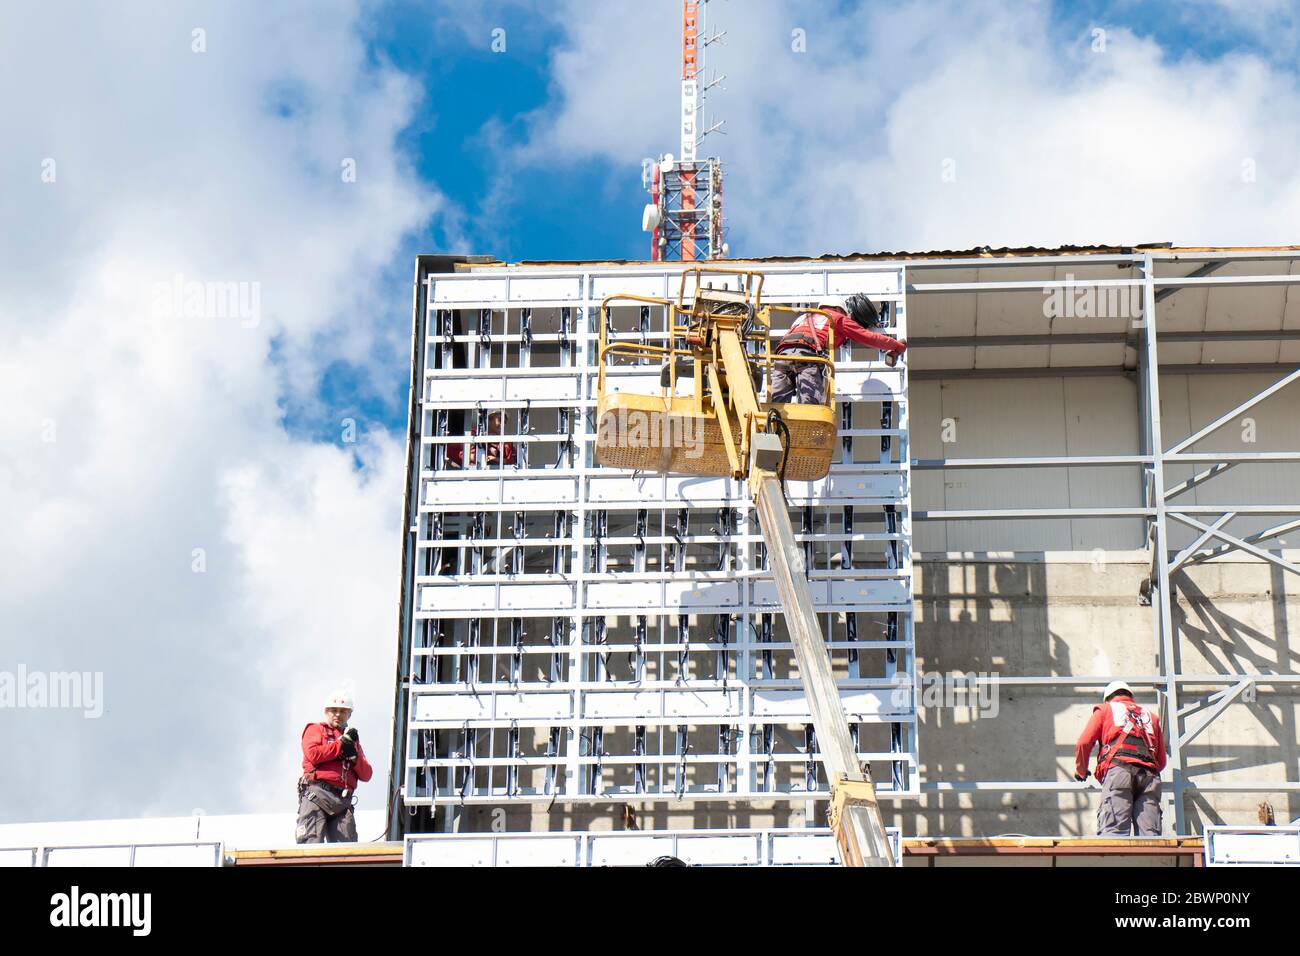 Belgrade, Serbie - 6 mai 2020: Ouvriers de la construction sur le chantier de construction de la structure externe de revêtement sur un mur de façade de bâtiment avec grue Banque D'Images